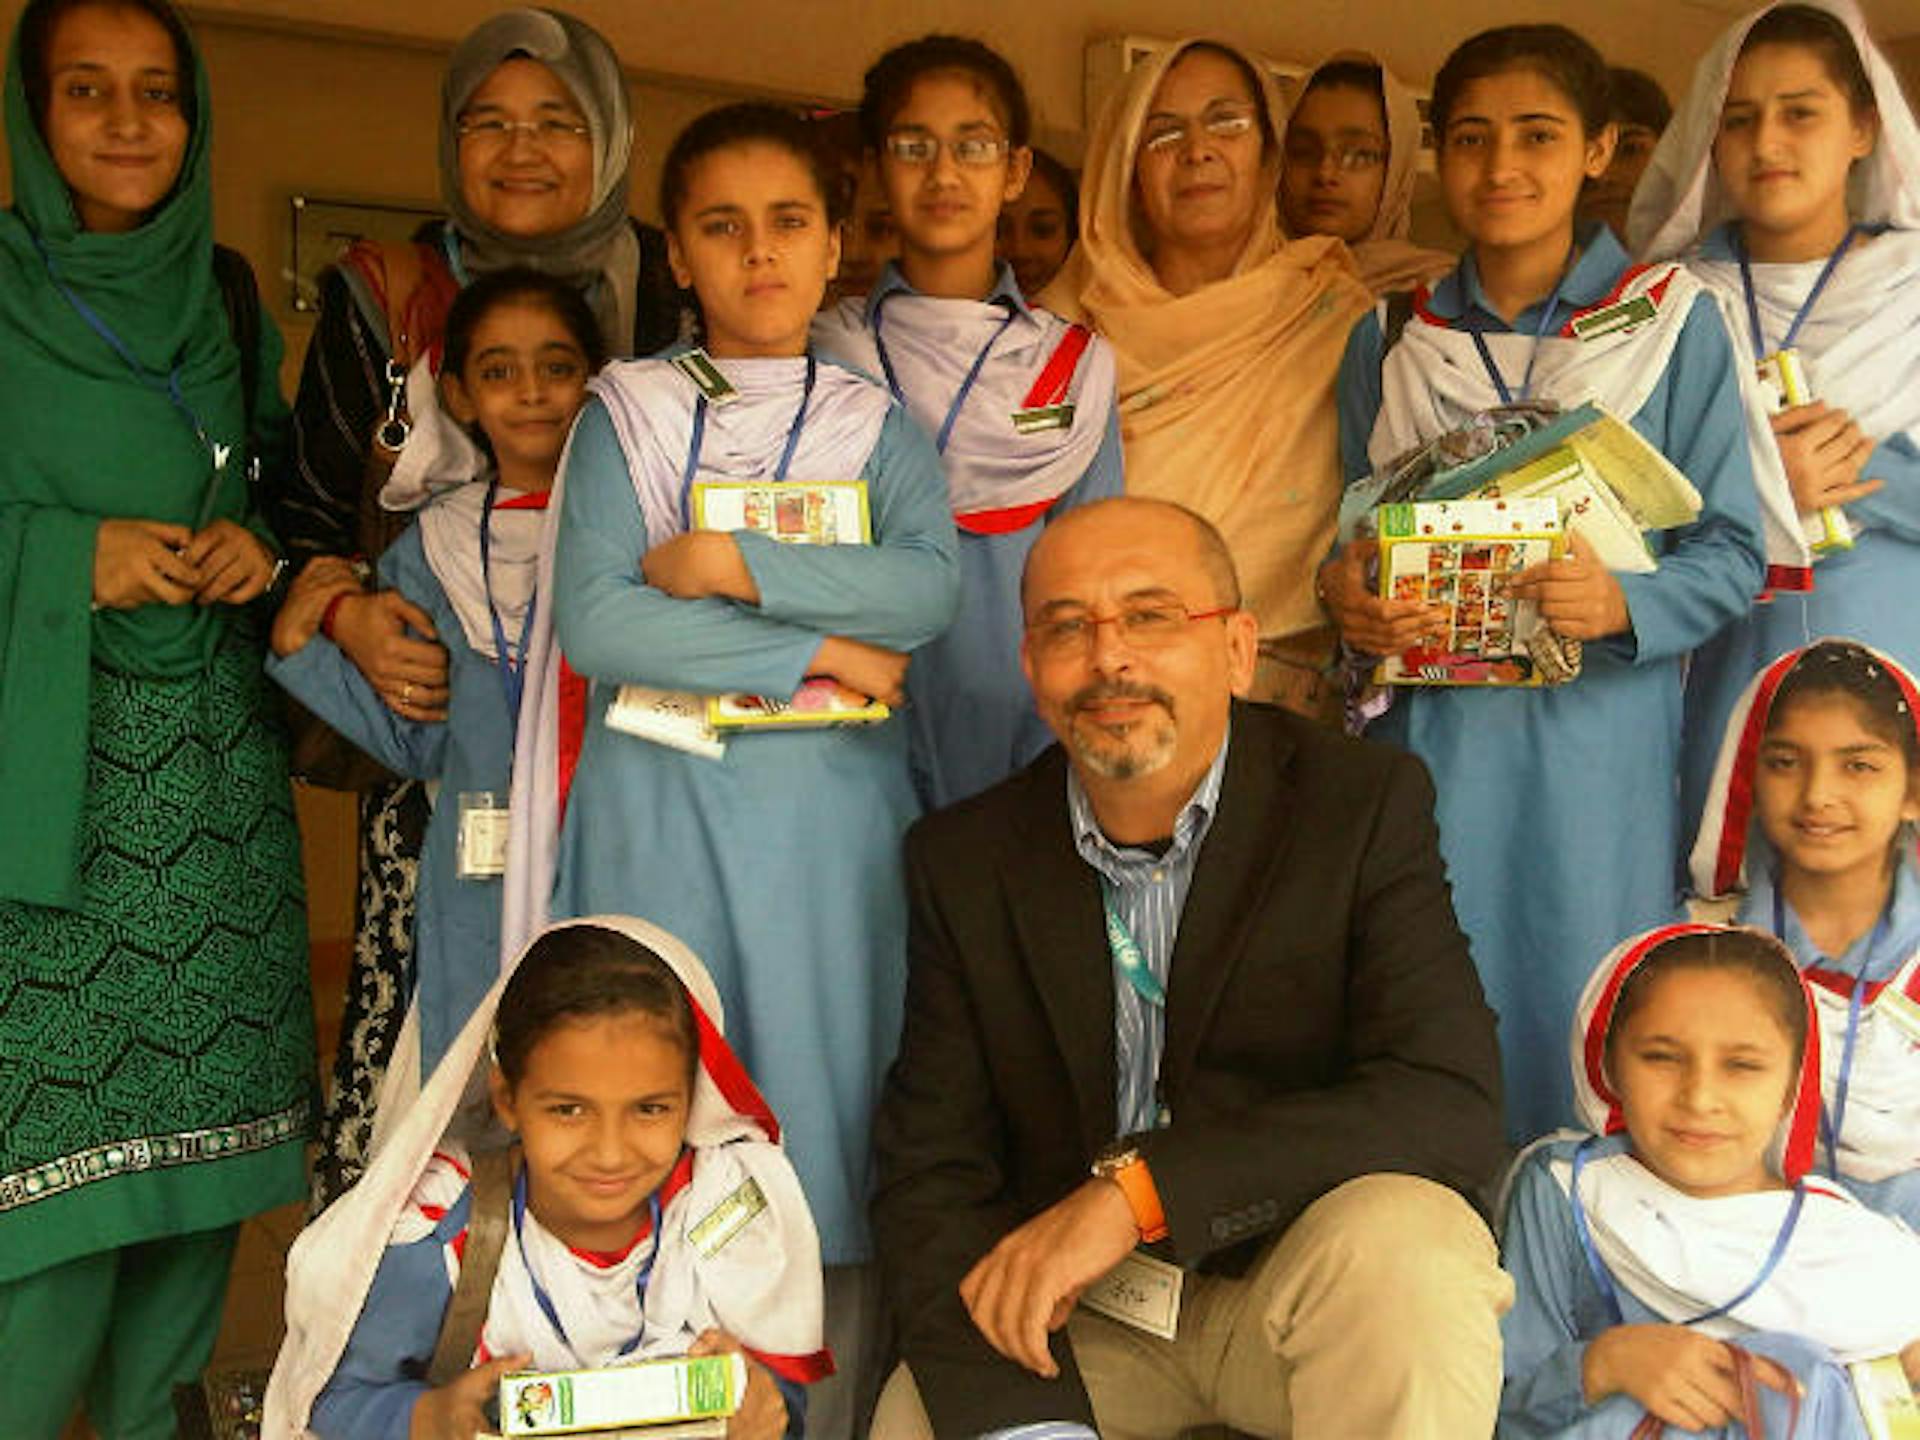 Lucio Melandri, Rappresentante UNICEF in Giordania